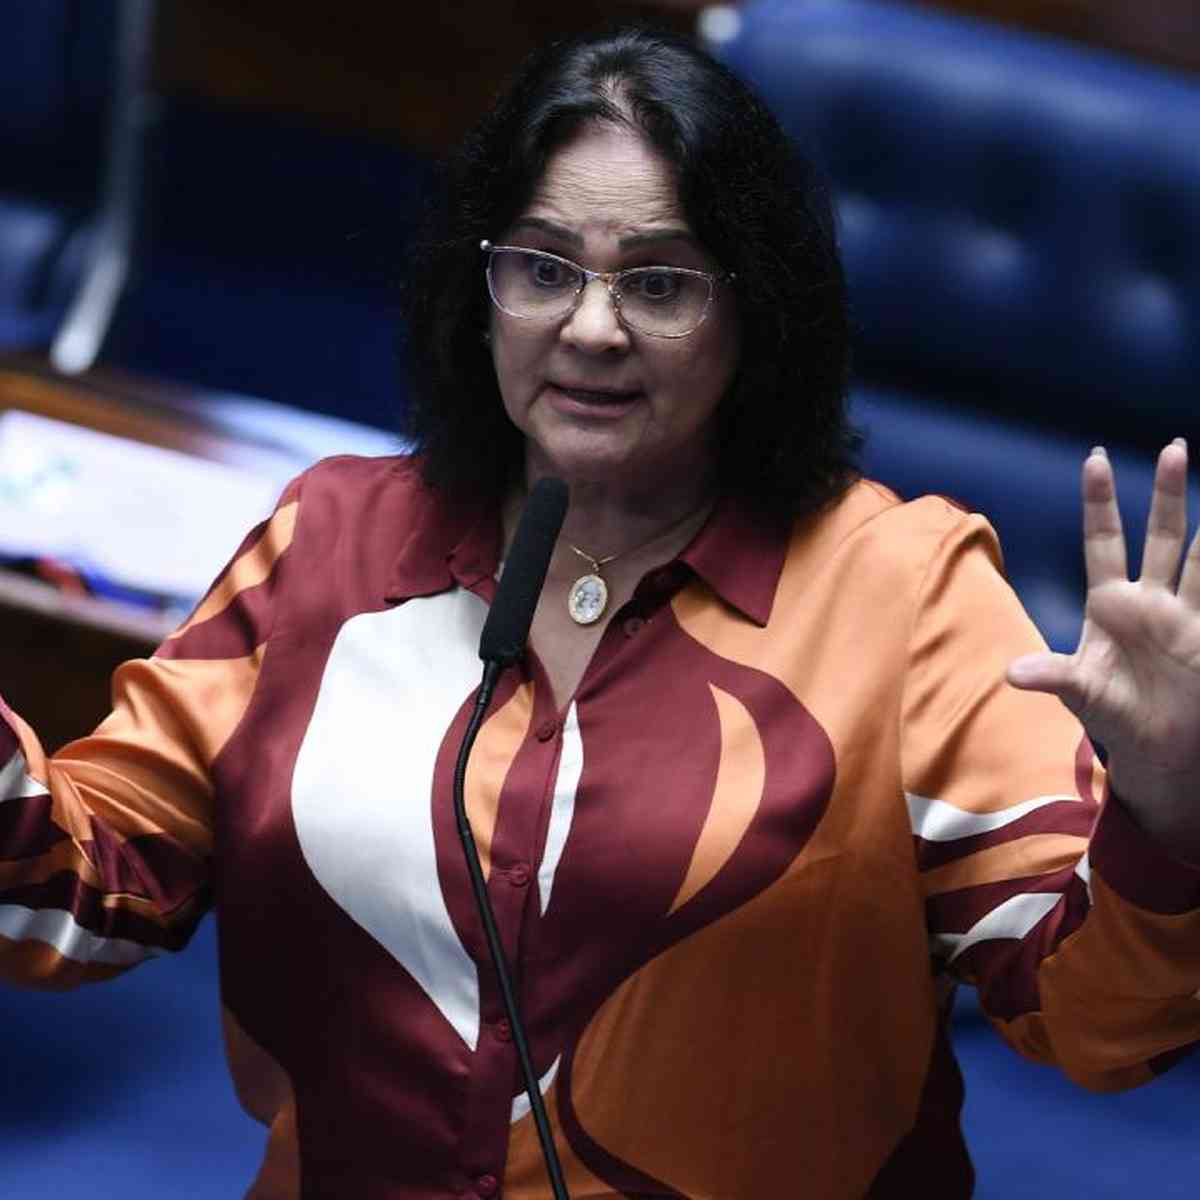 Saiba qual é o primeiro projeto de lei da senadora Damares Alves